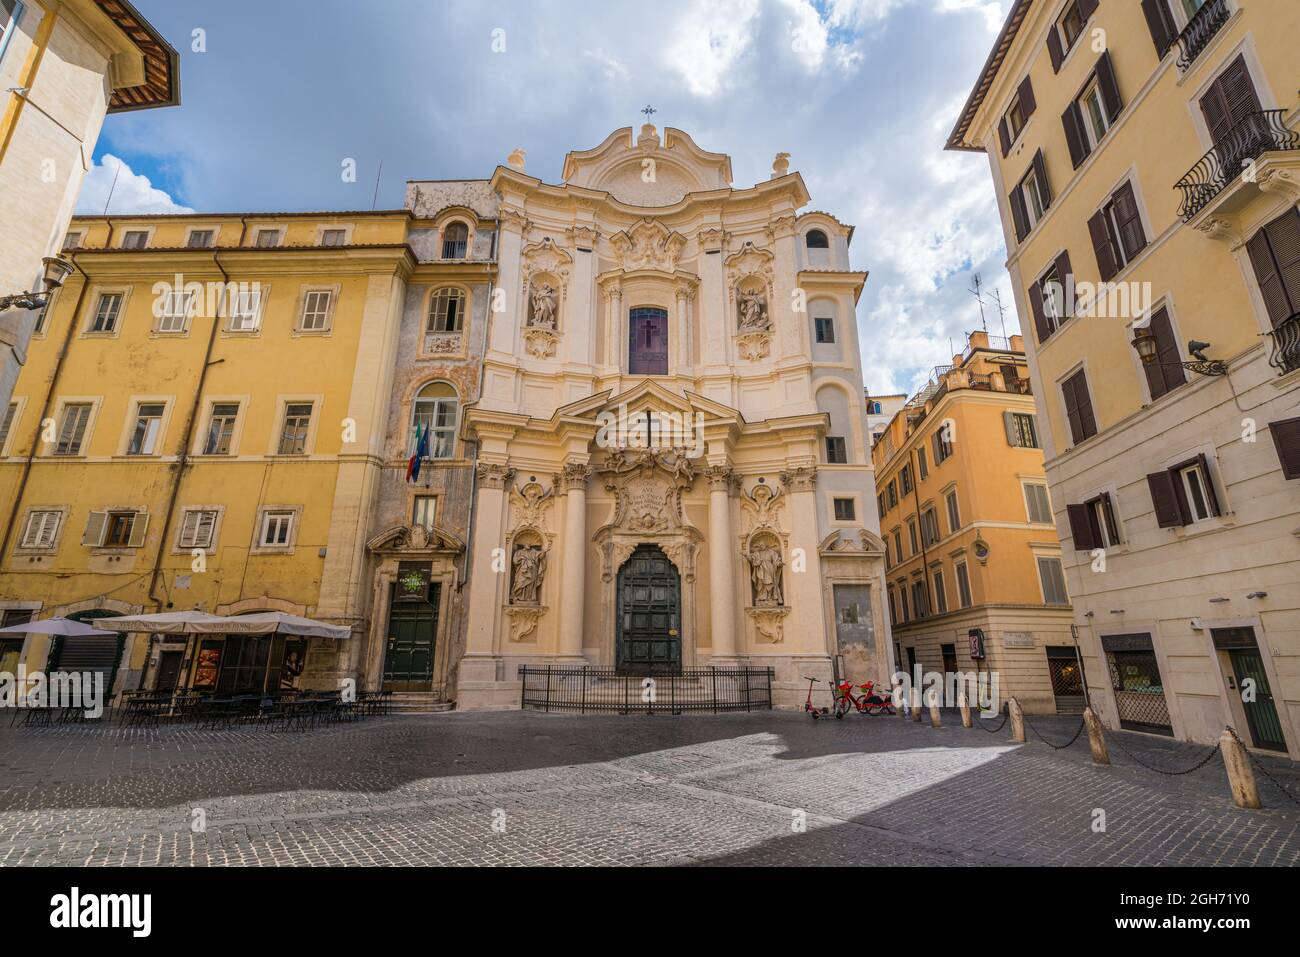 The facade of the Church of Santa Maria Maddalena in Rome, Italy. Stock Photo